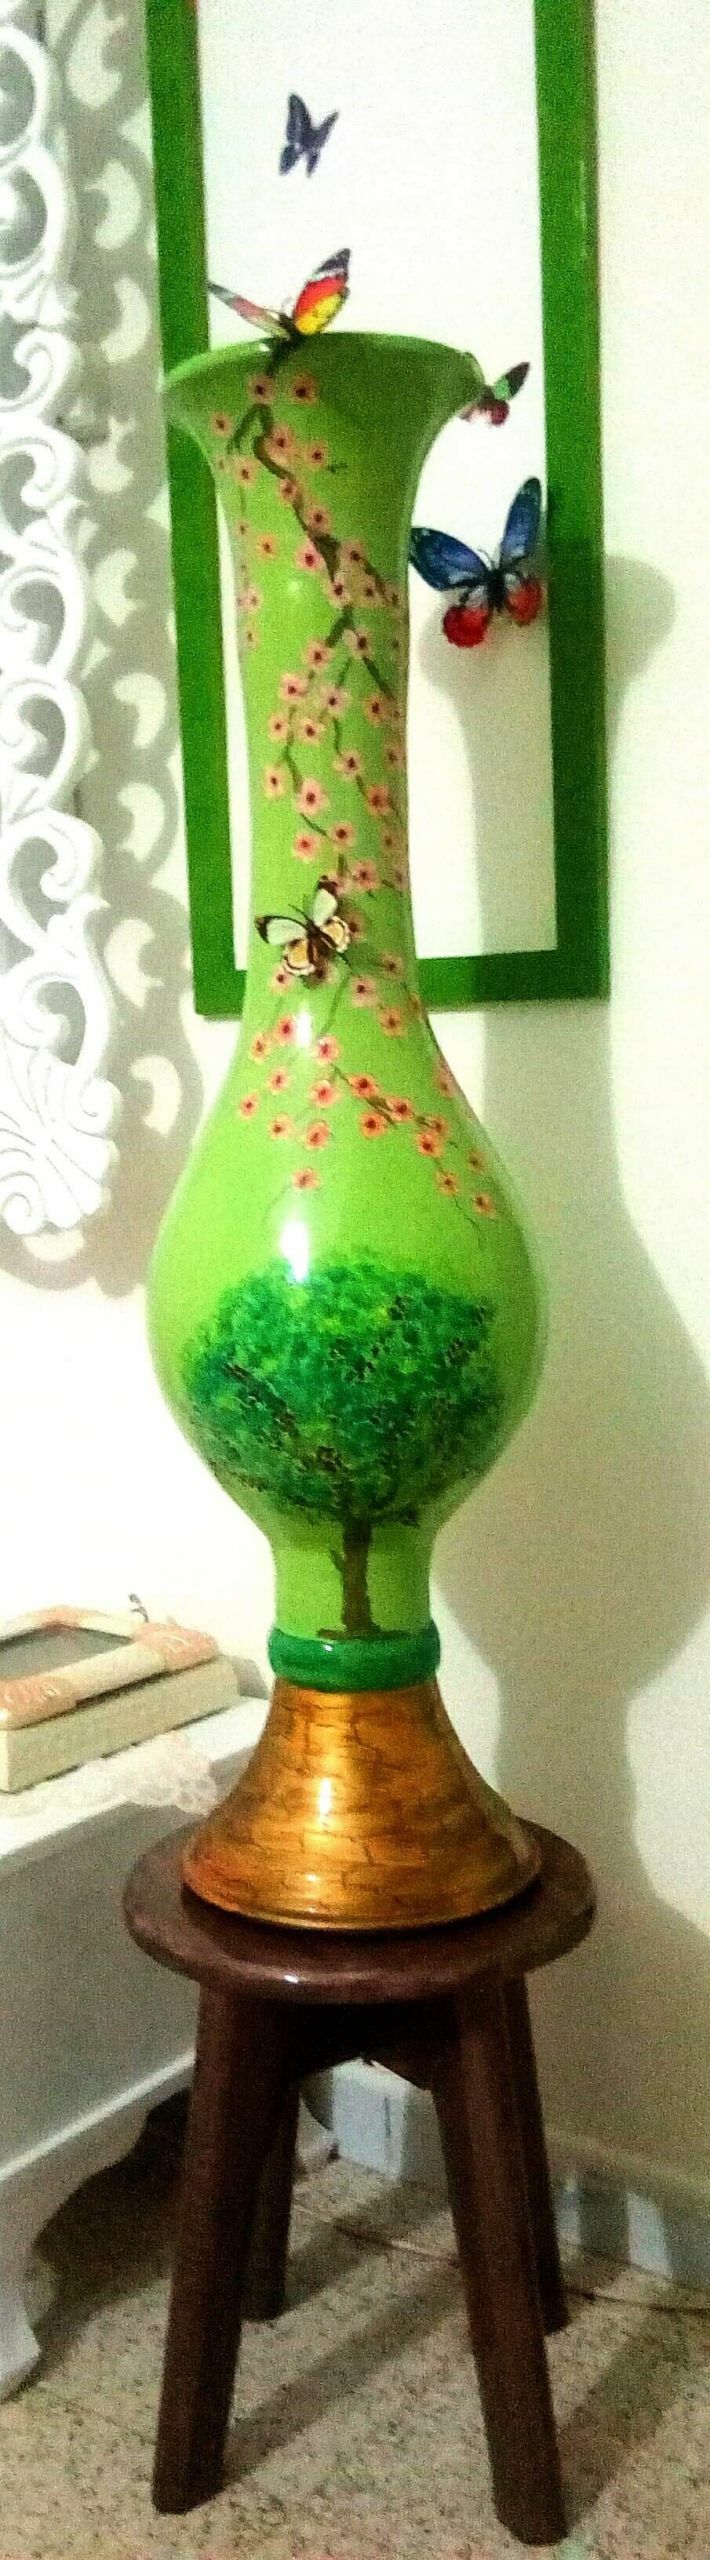 vase - a Art Design by kaled